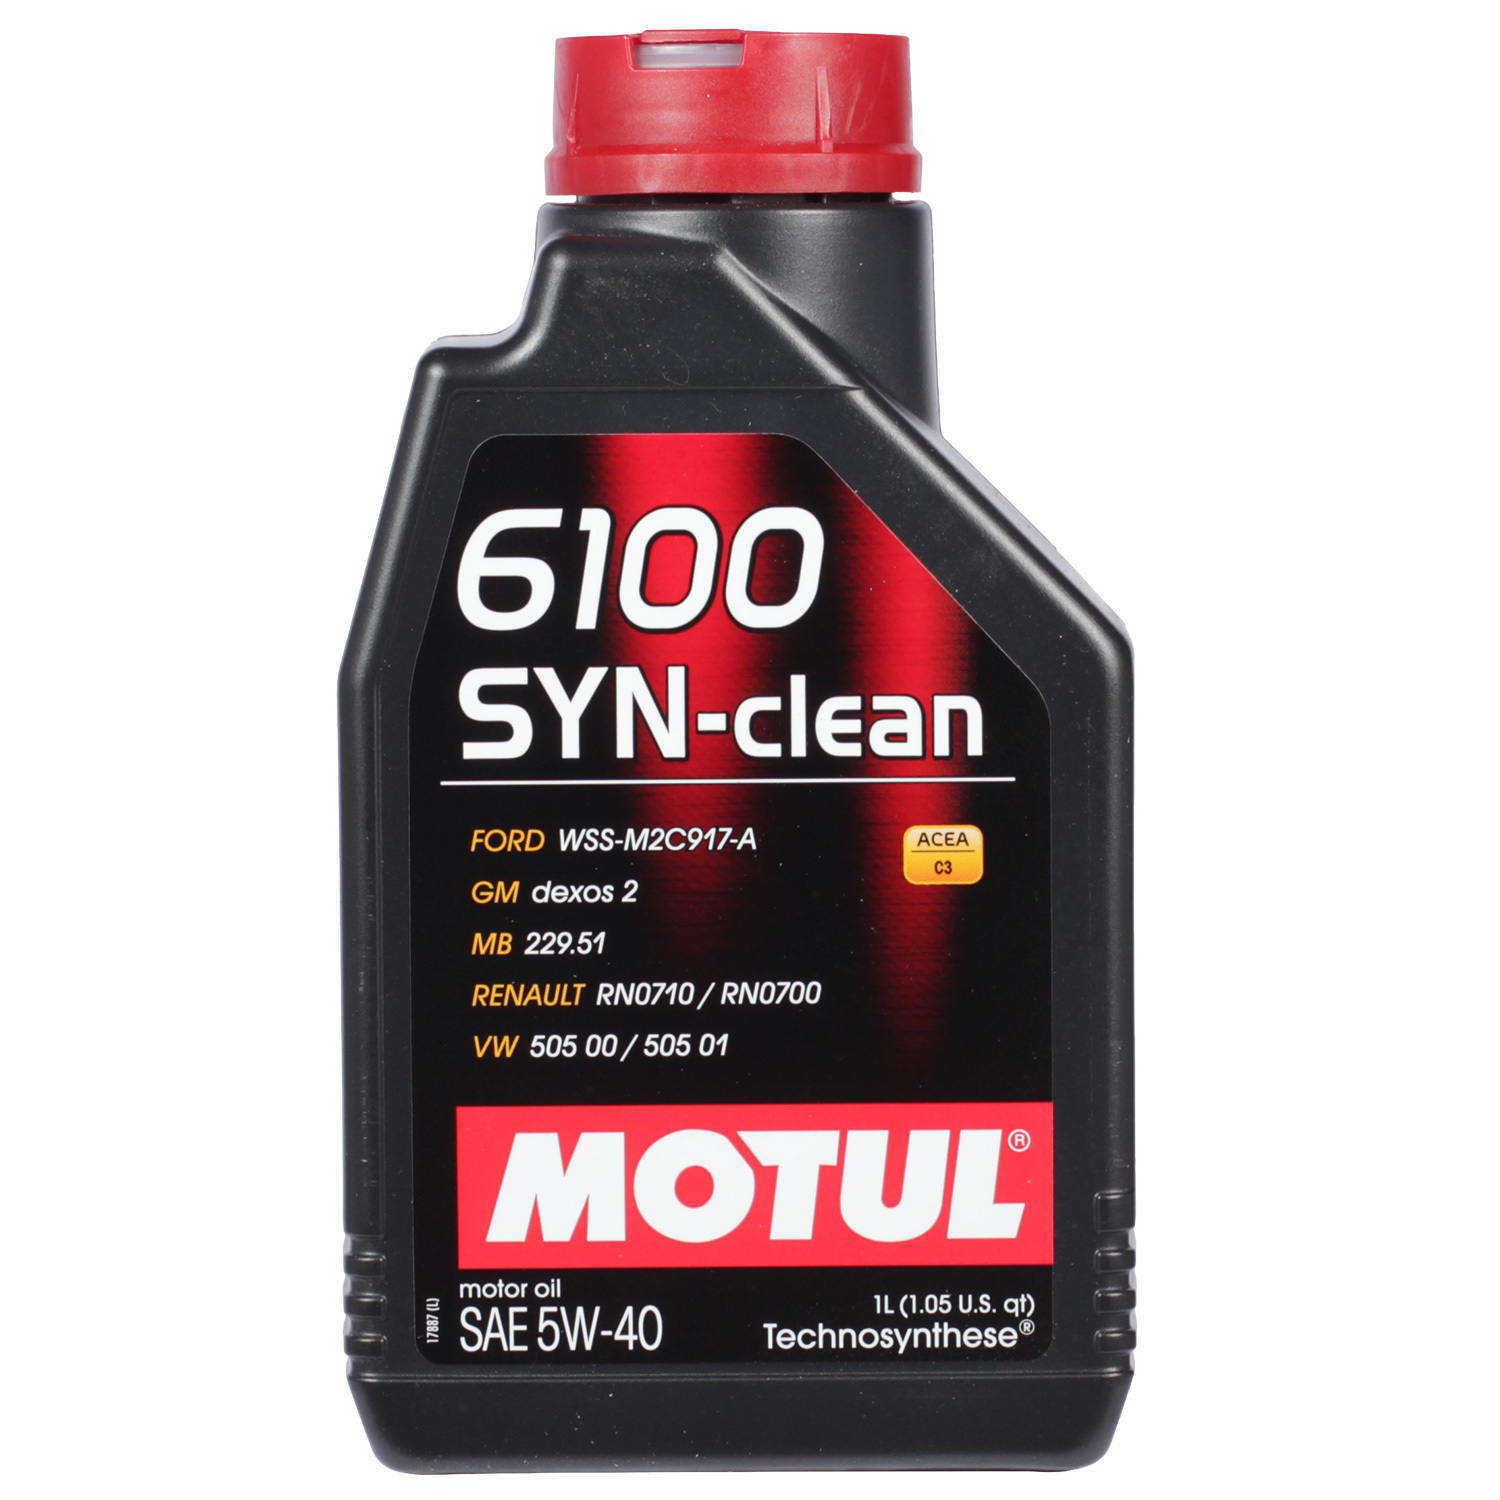 Motul Моторное масло Motul 6100 SYN-CLEAN 5W-40, 1 л motul моторное масло motul 6100 synergie 5w 30 4 л